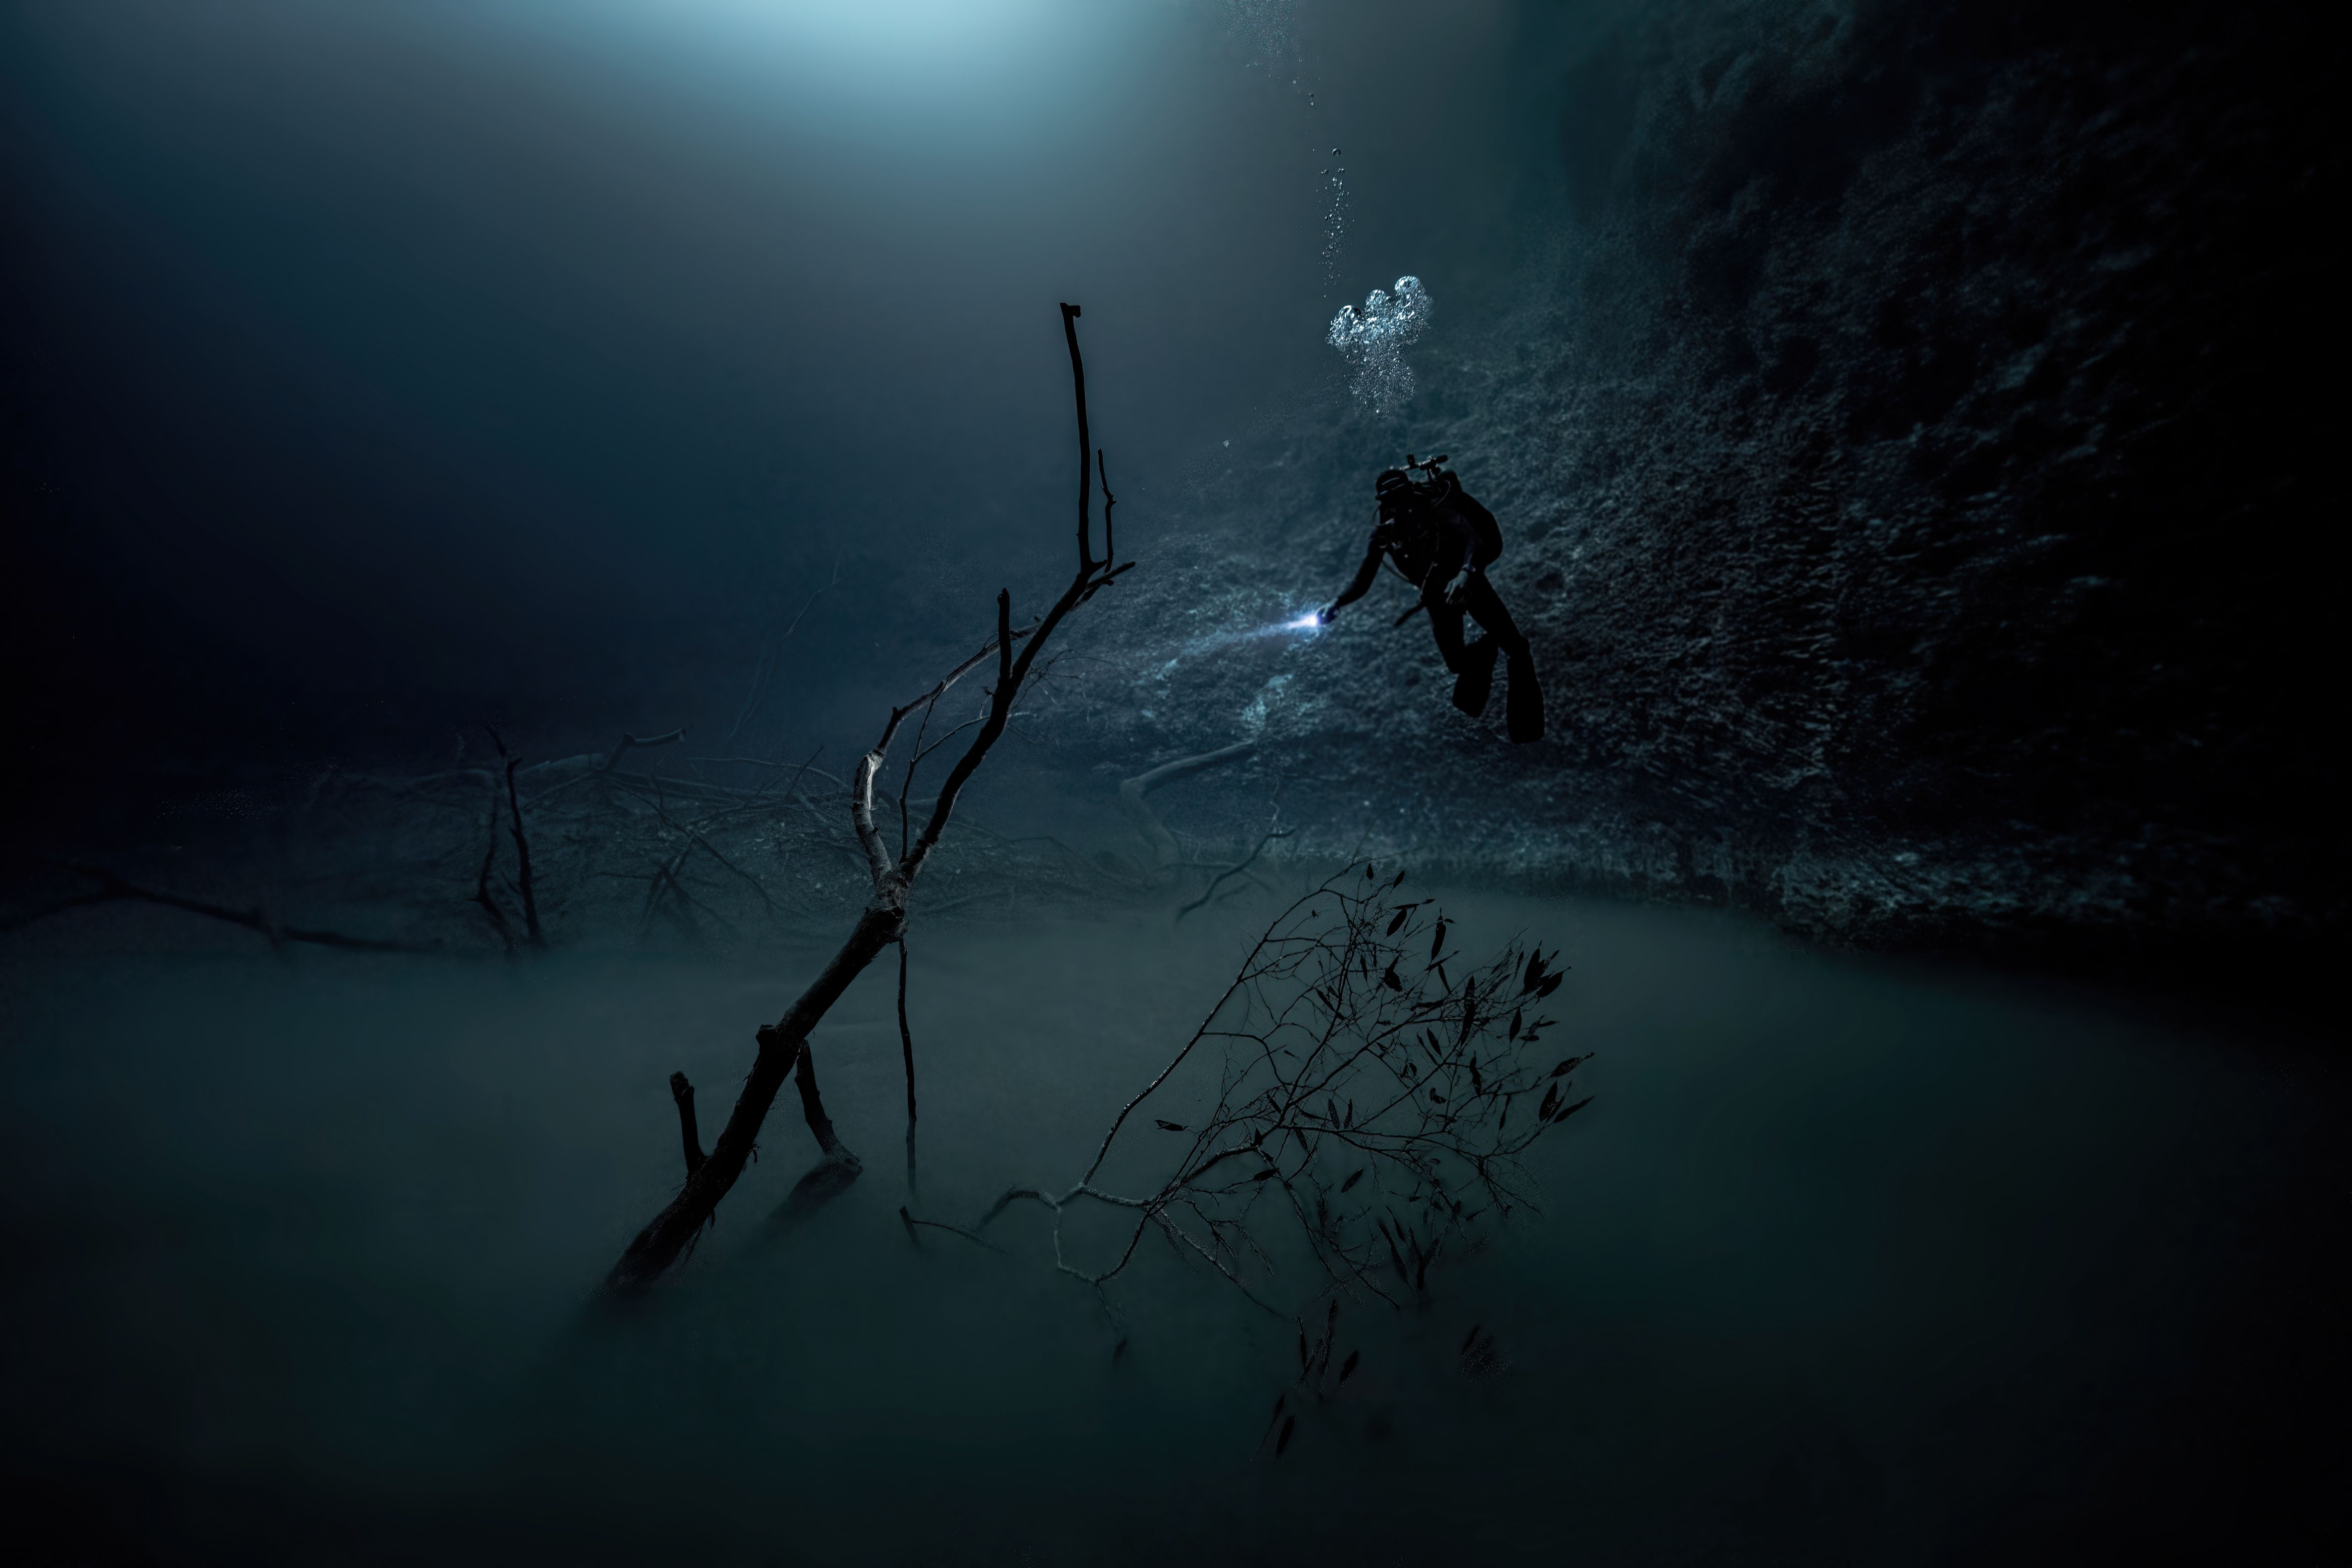 сеноты, подводное фото, подводный мир, фото под водой, underwater photo, underwater, дайвинг, Павел Карчевский